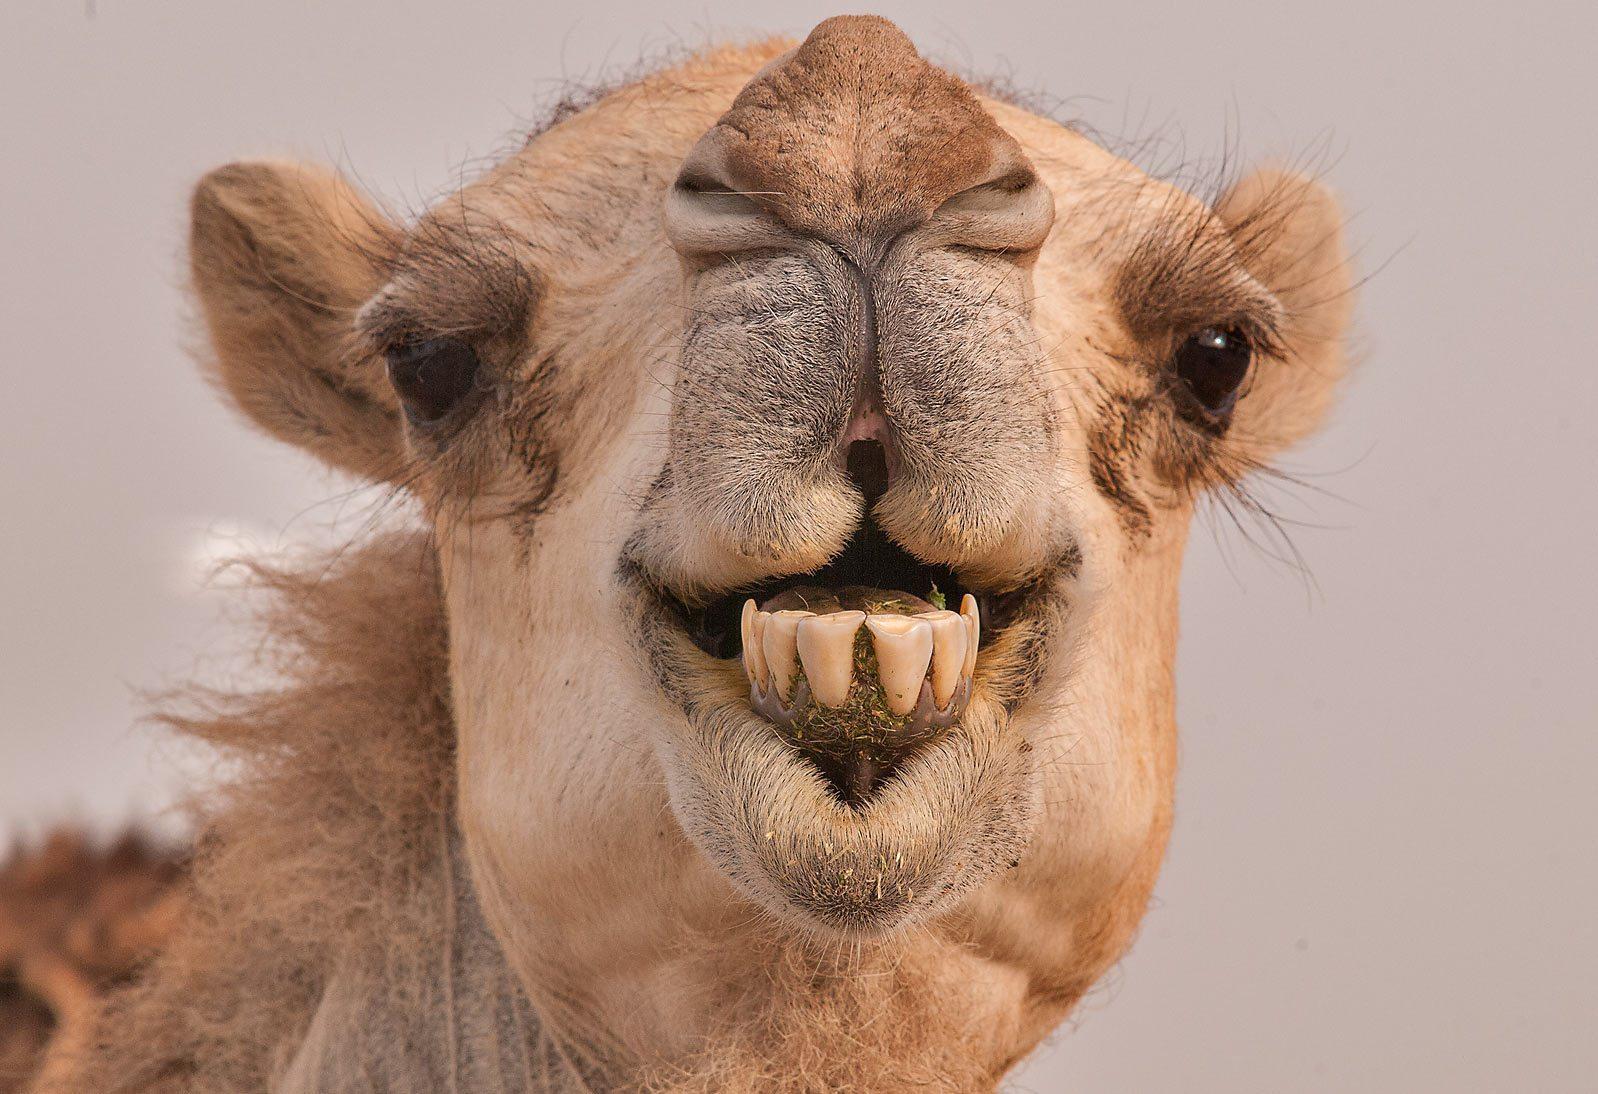 Corona IN Camels:ऊंट में नहीं फ़ैल सकता कोरोना,उनकी एंटी बॉडी से हो सकता है कोरोना का इलाज ?